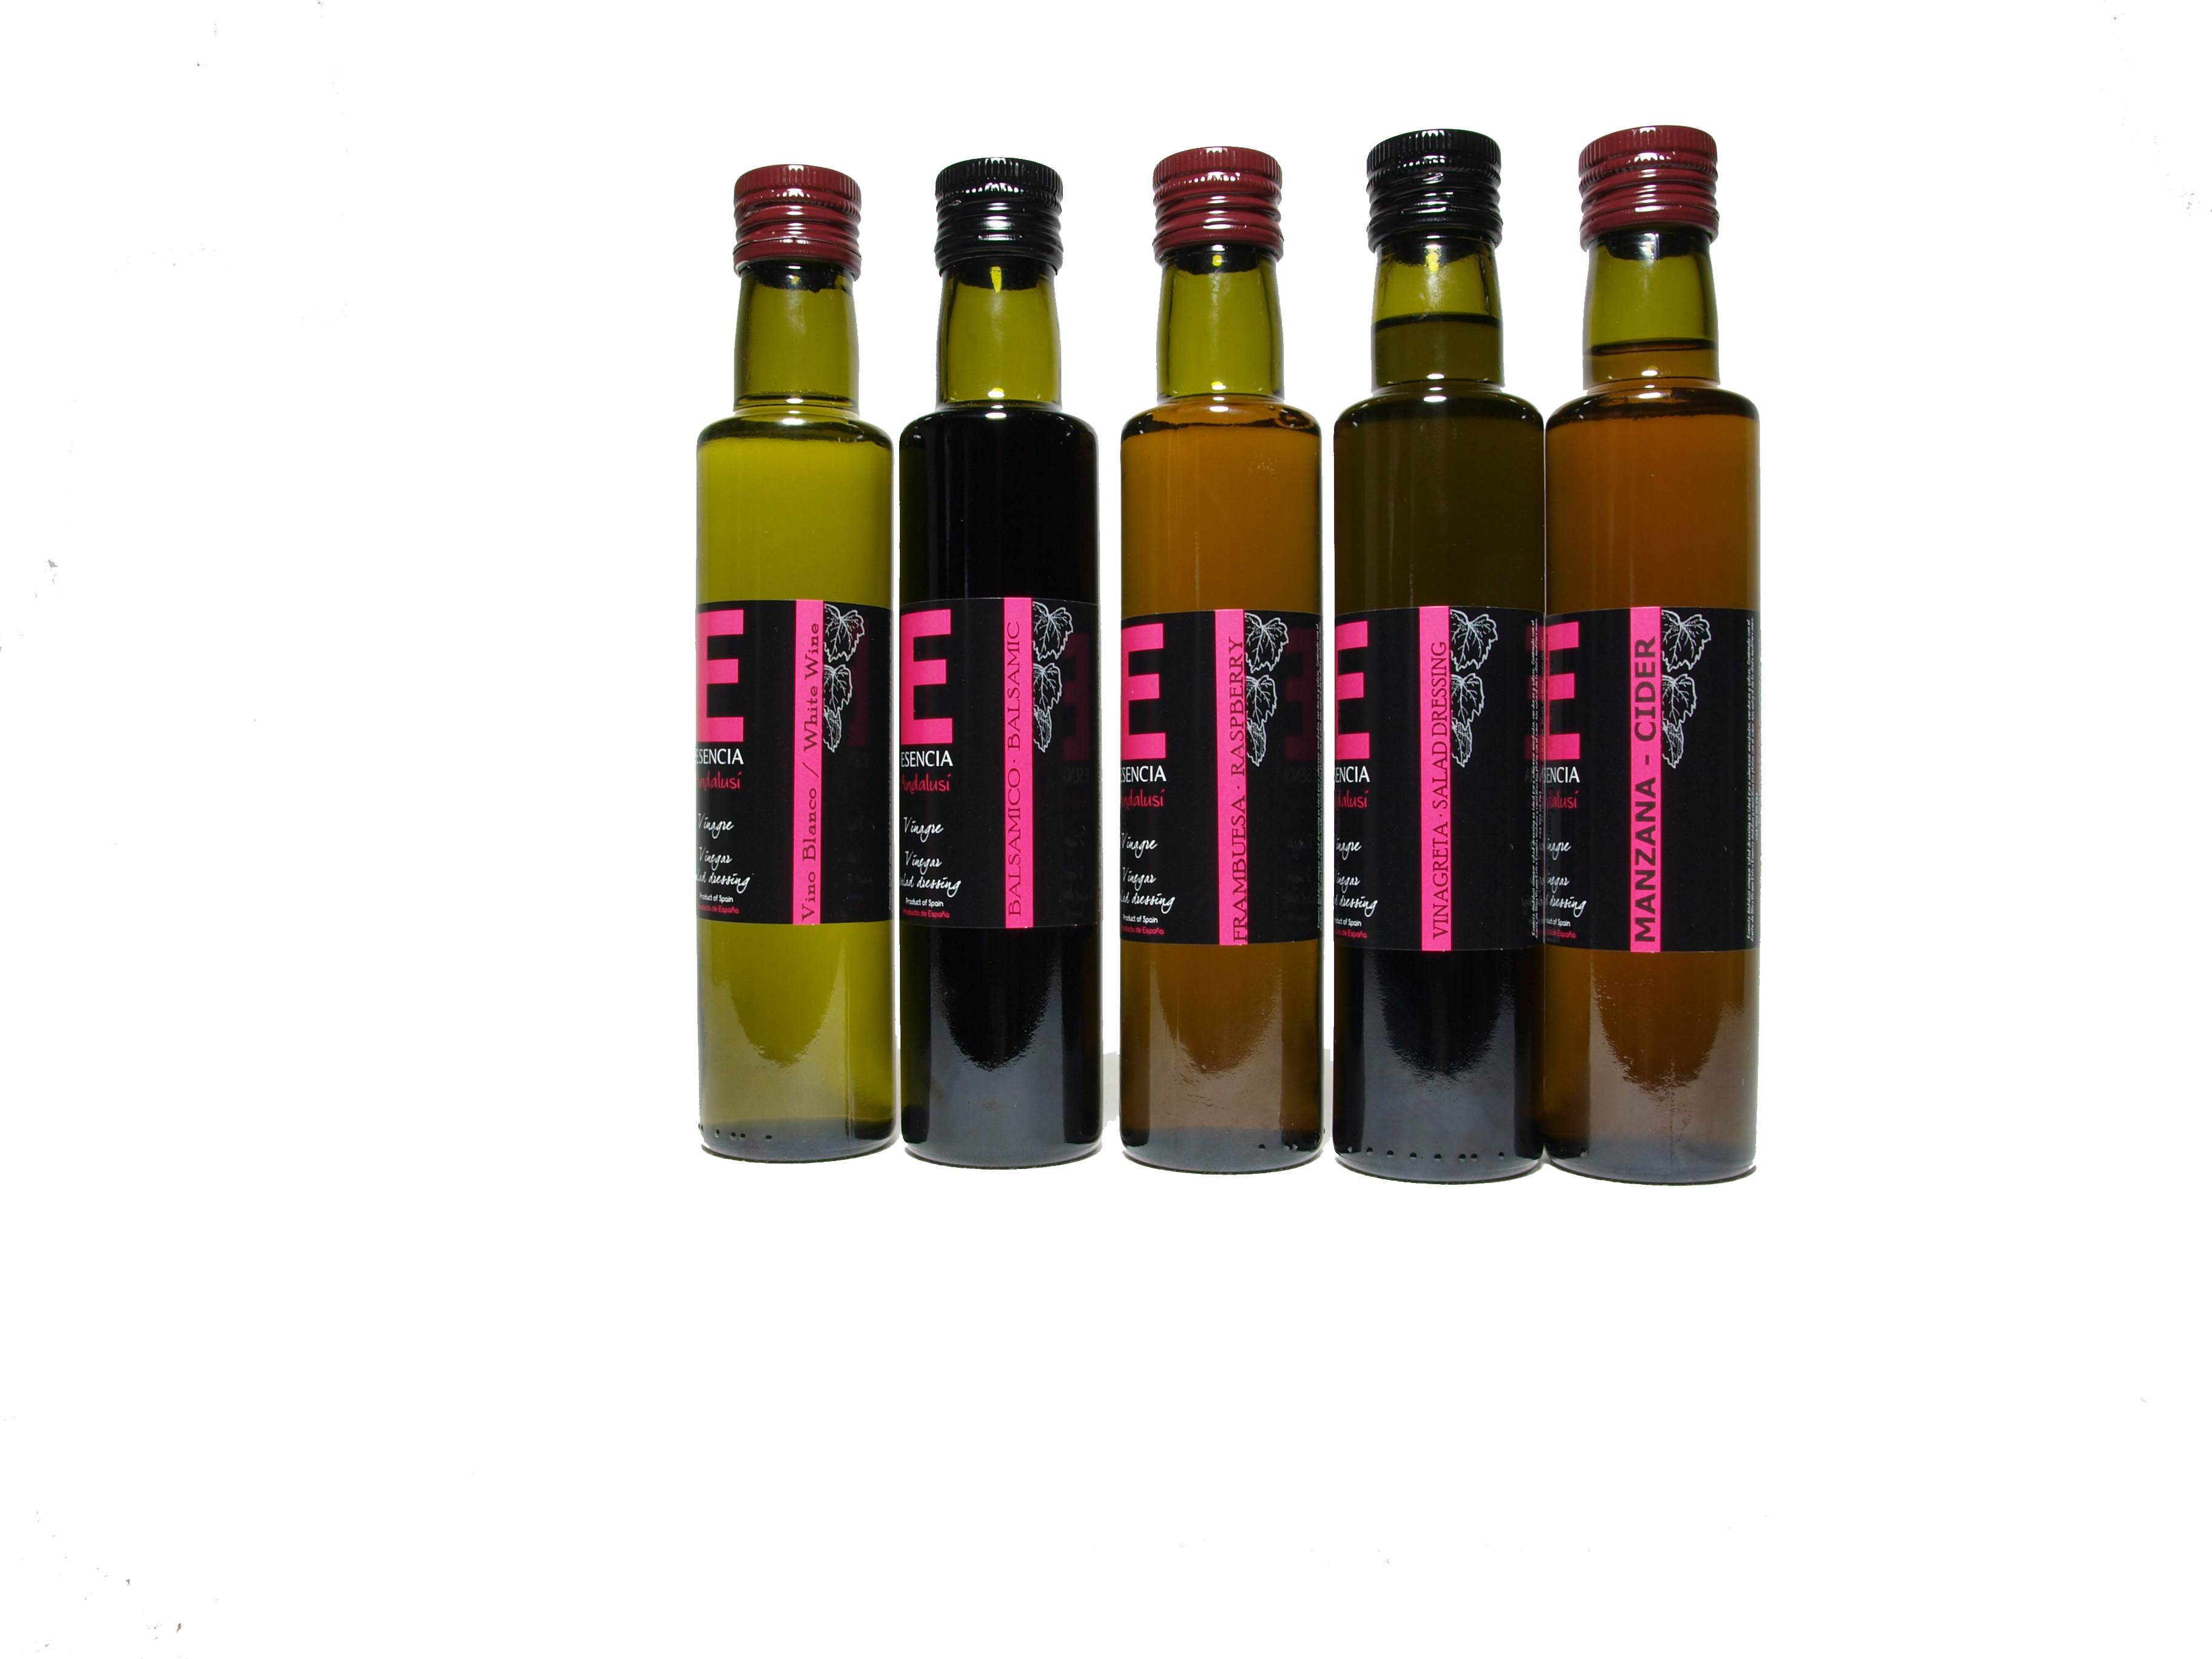 Vinagre balsamico - Product - es